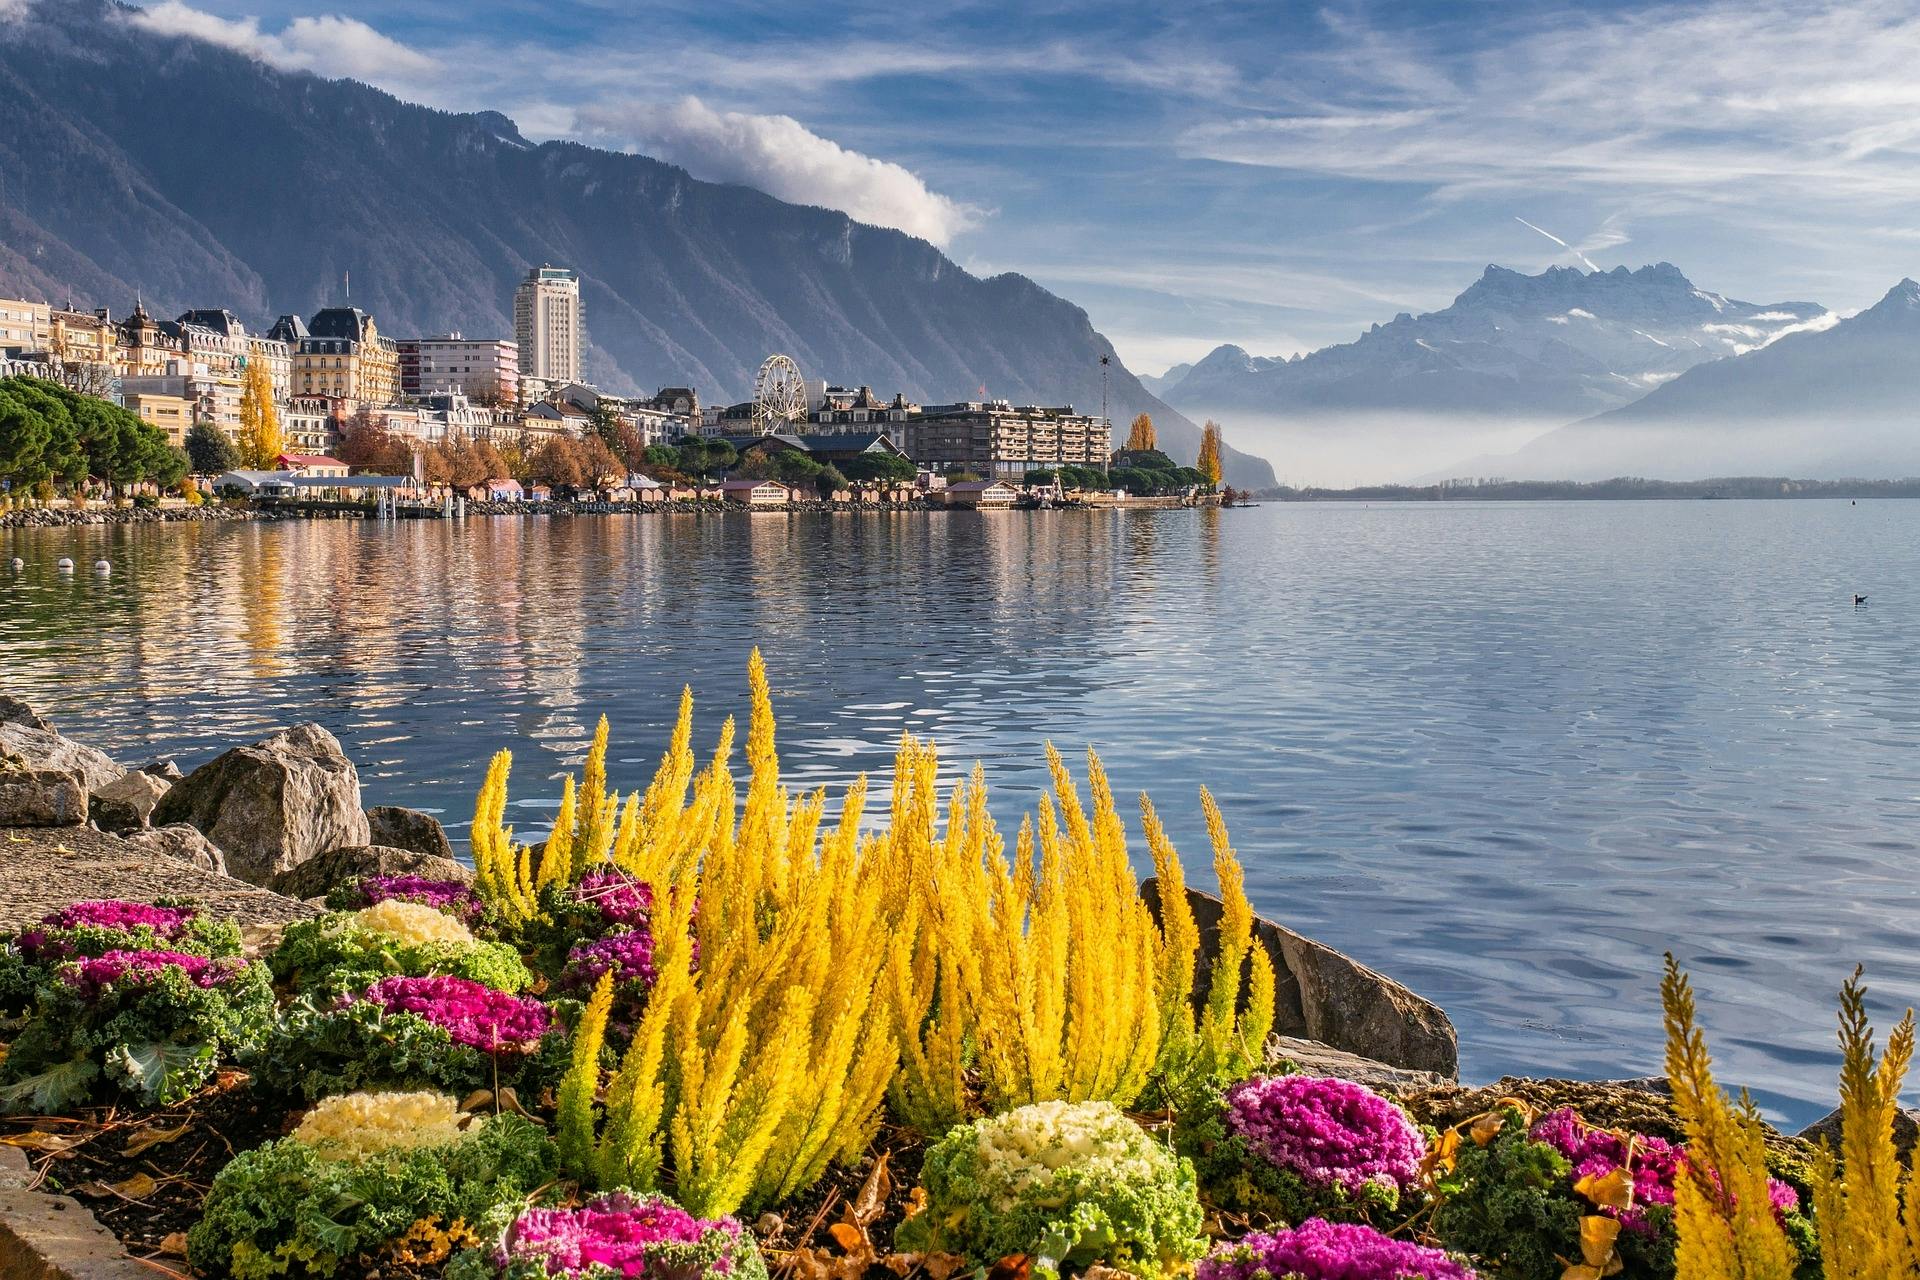 Piesza wycieczka po najbardziej fotogenicznych miejscach Montreux z miejscowym